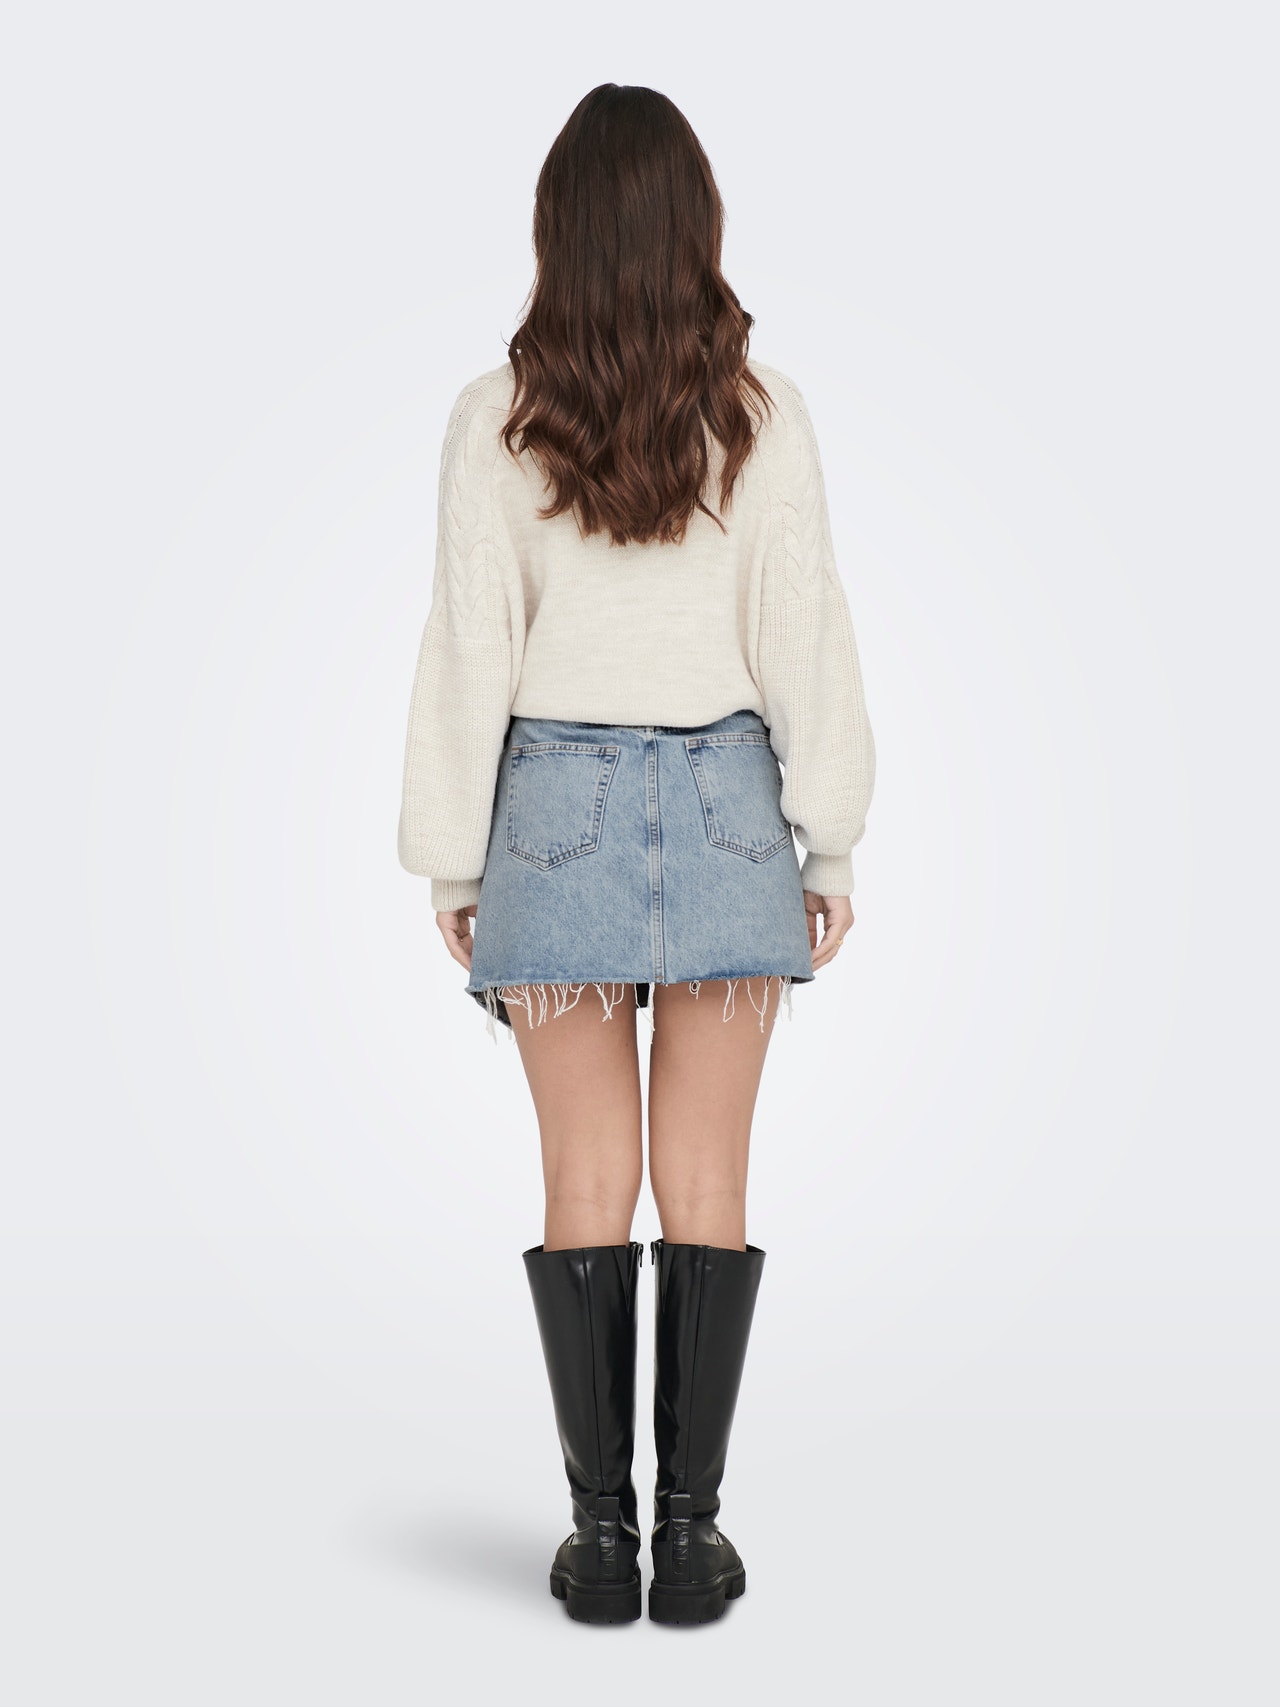 ONLY High waist Short skirt -Light Blue Denim - 15290439